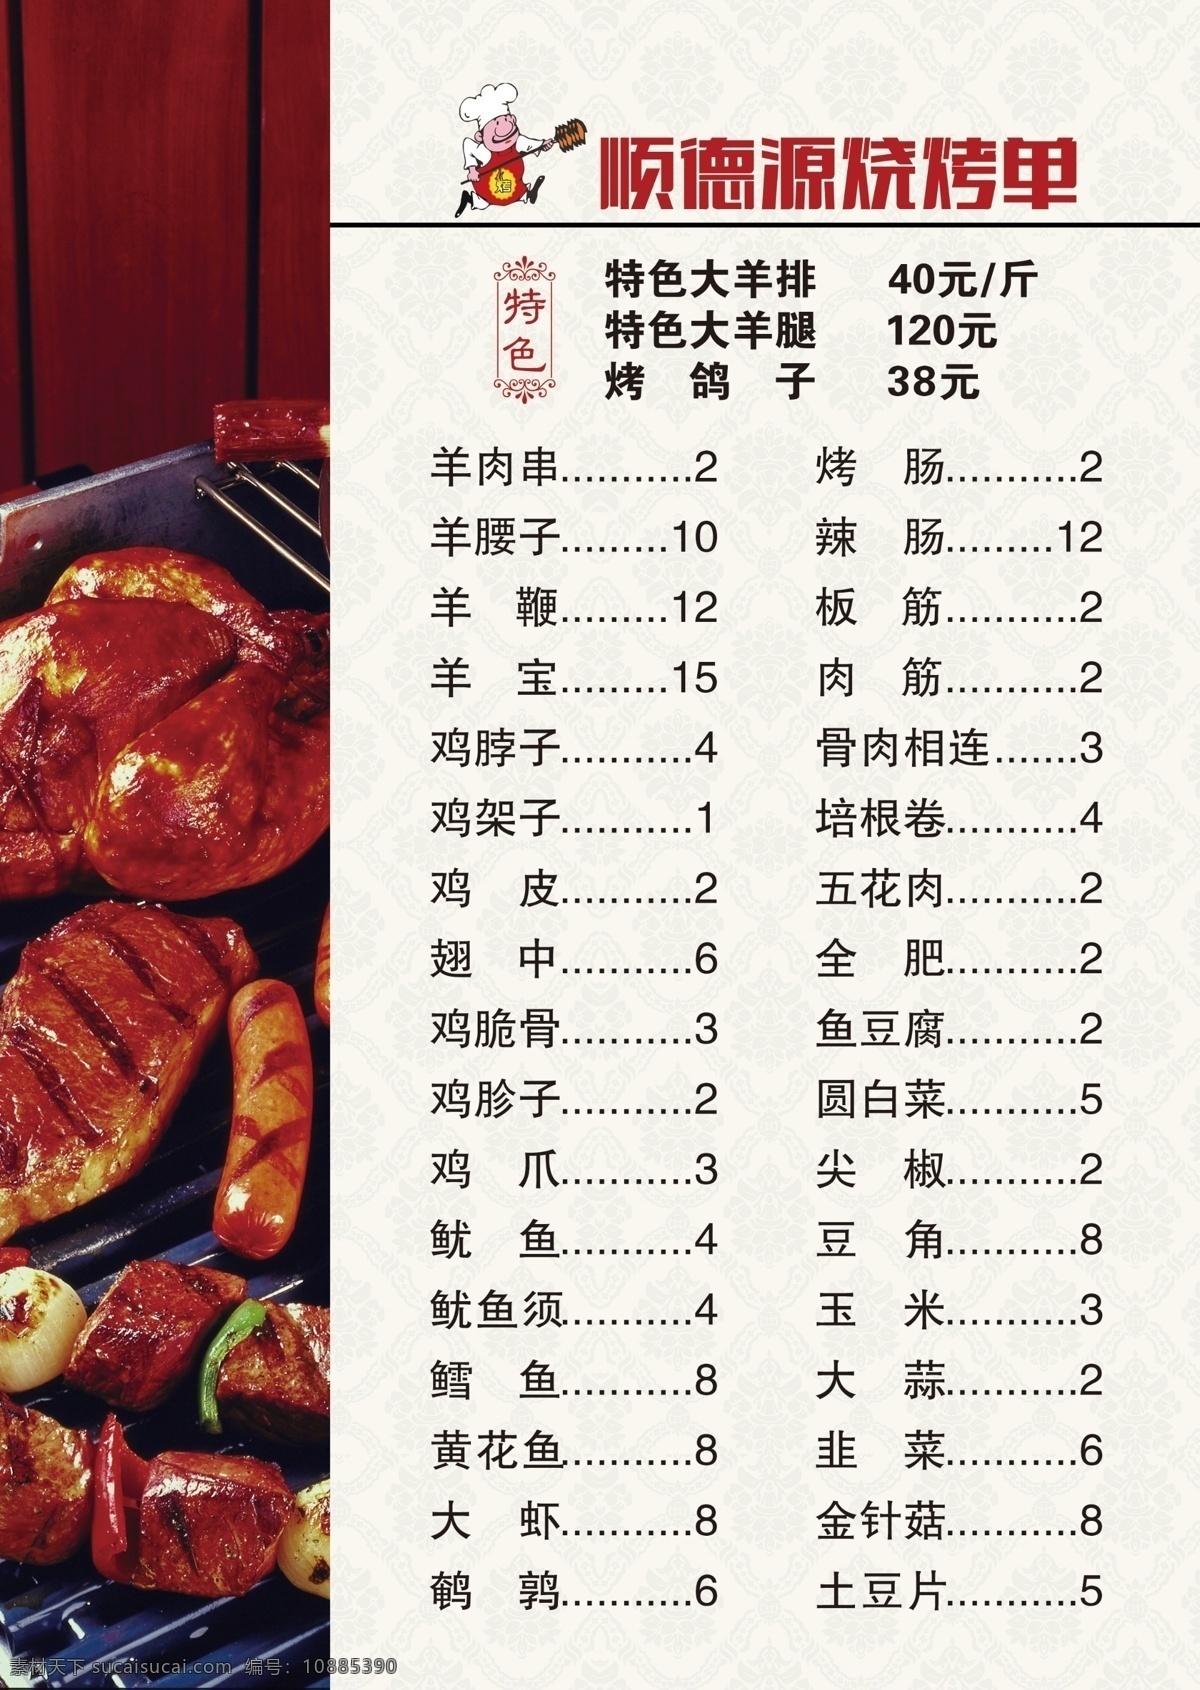 烧烤单 菜单子 菜单 价目表 烤串 菜谱 我的东东 菜单菜谱